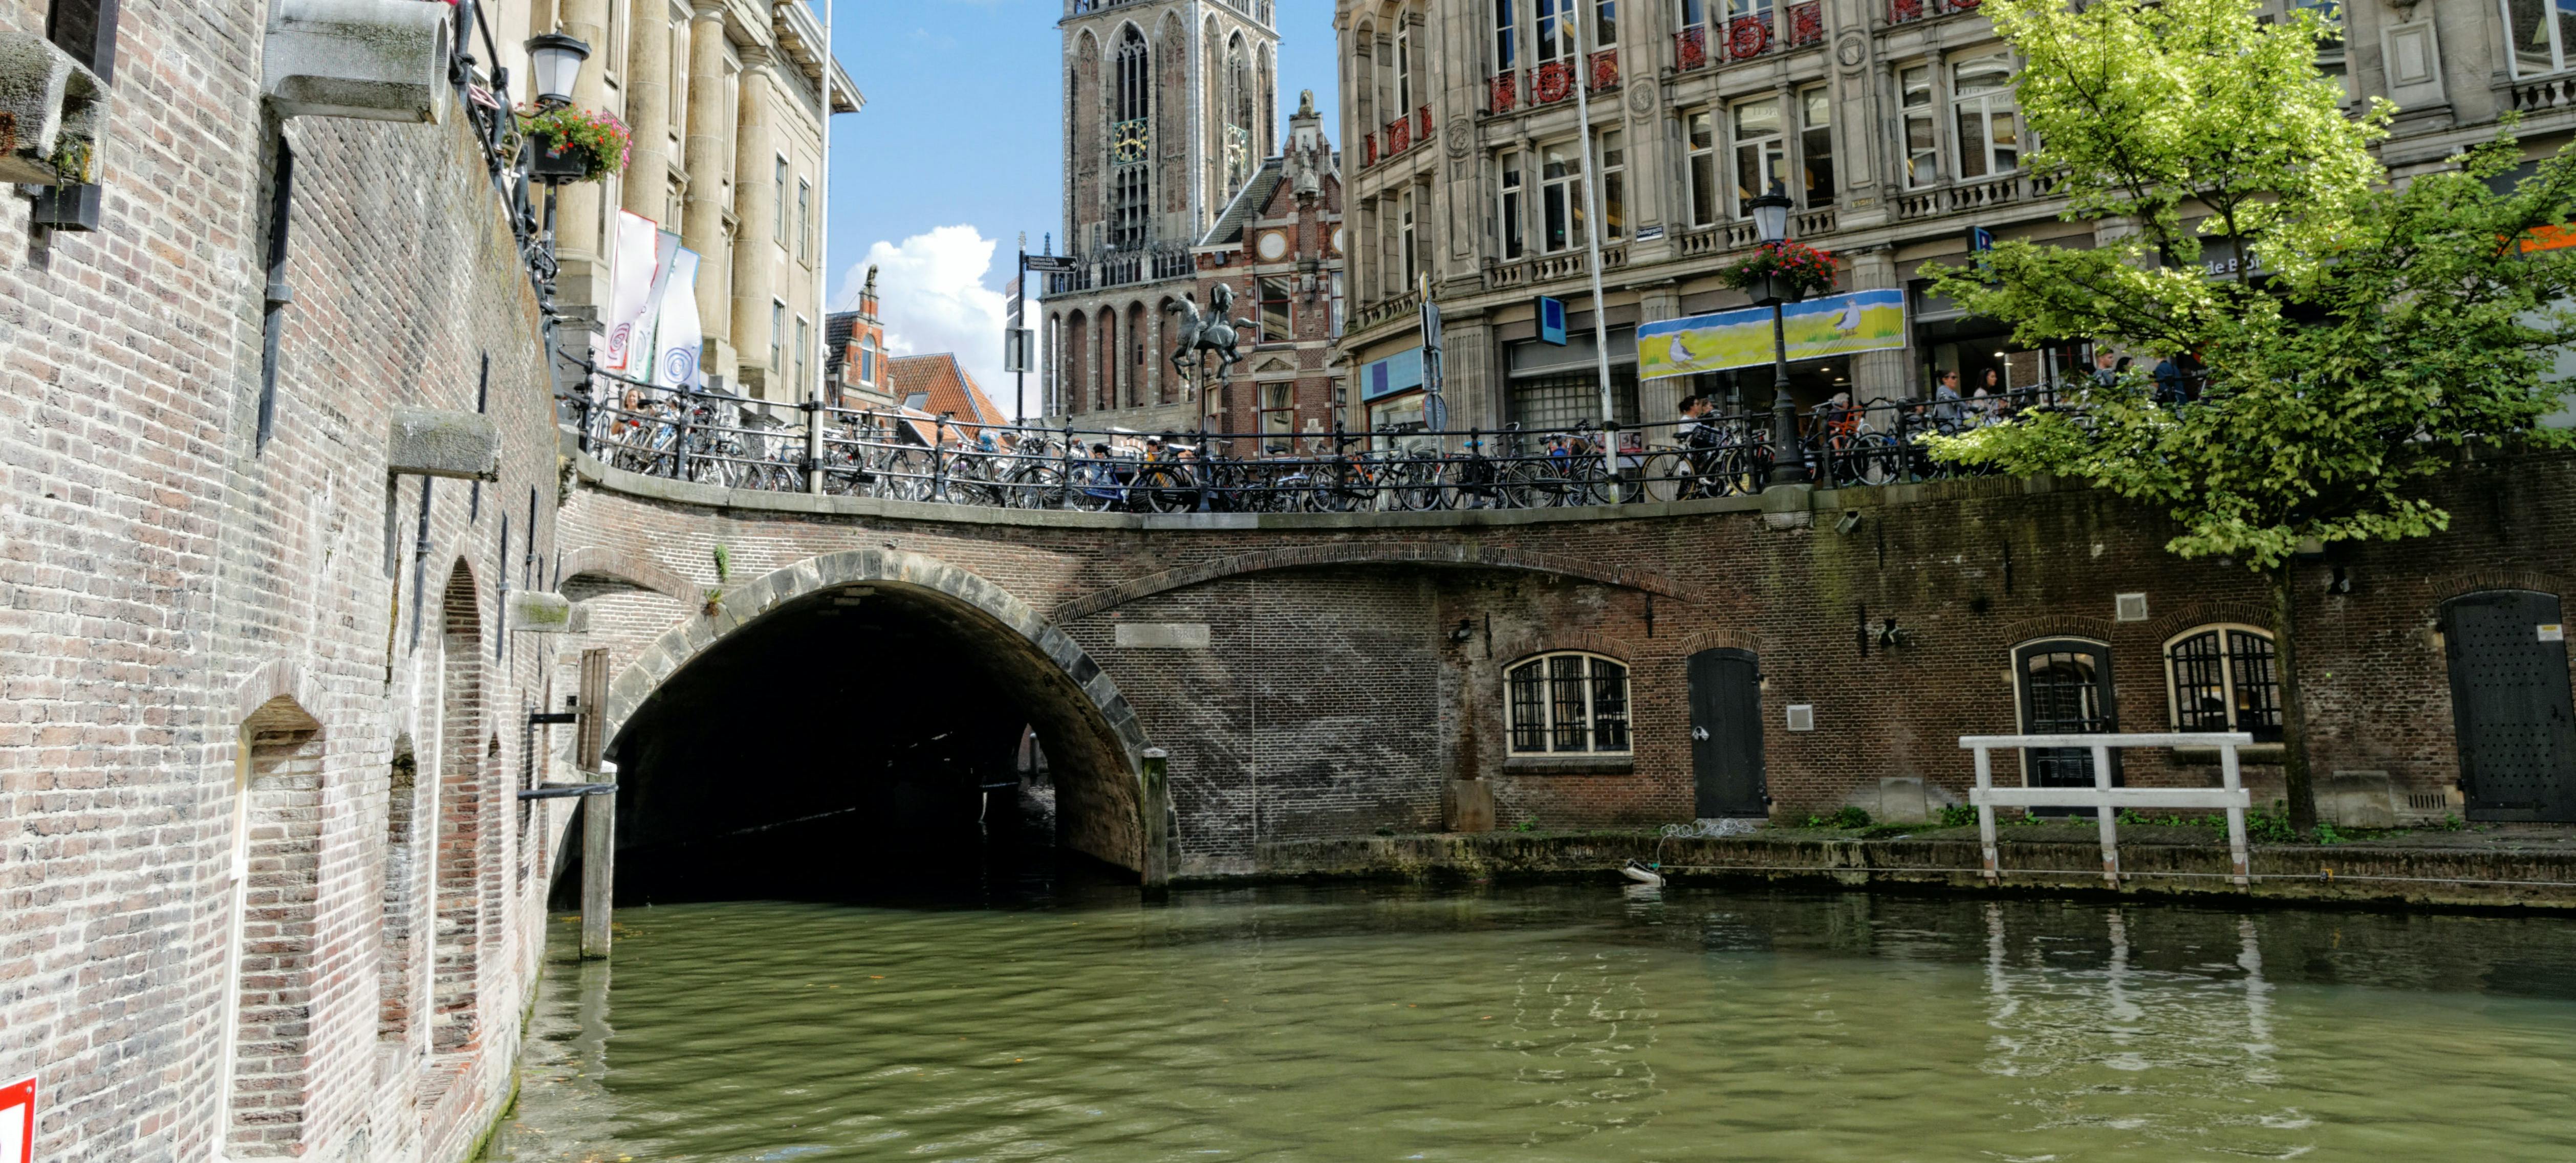 Crucero por el canal de Utrecht de 1 hora